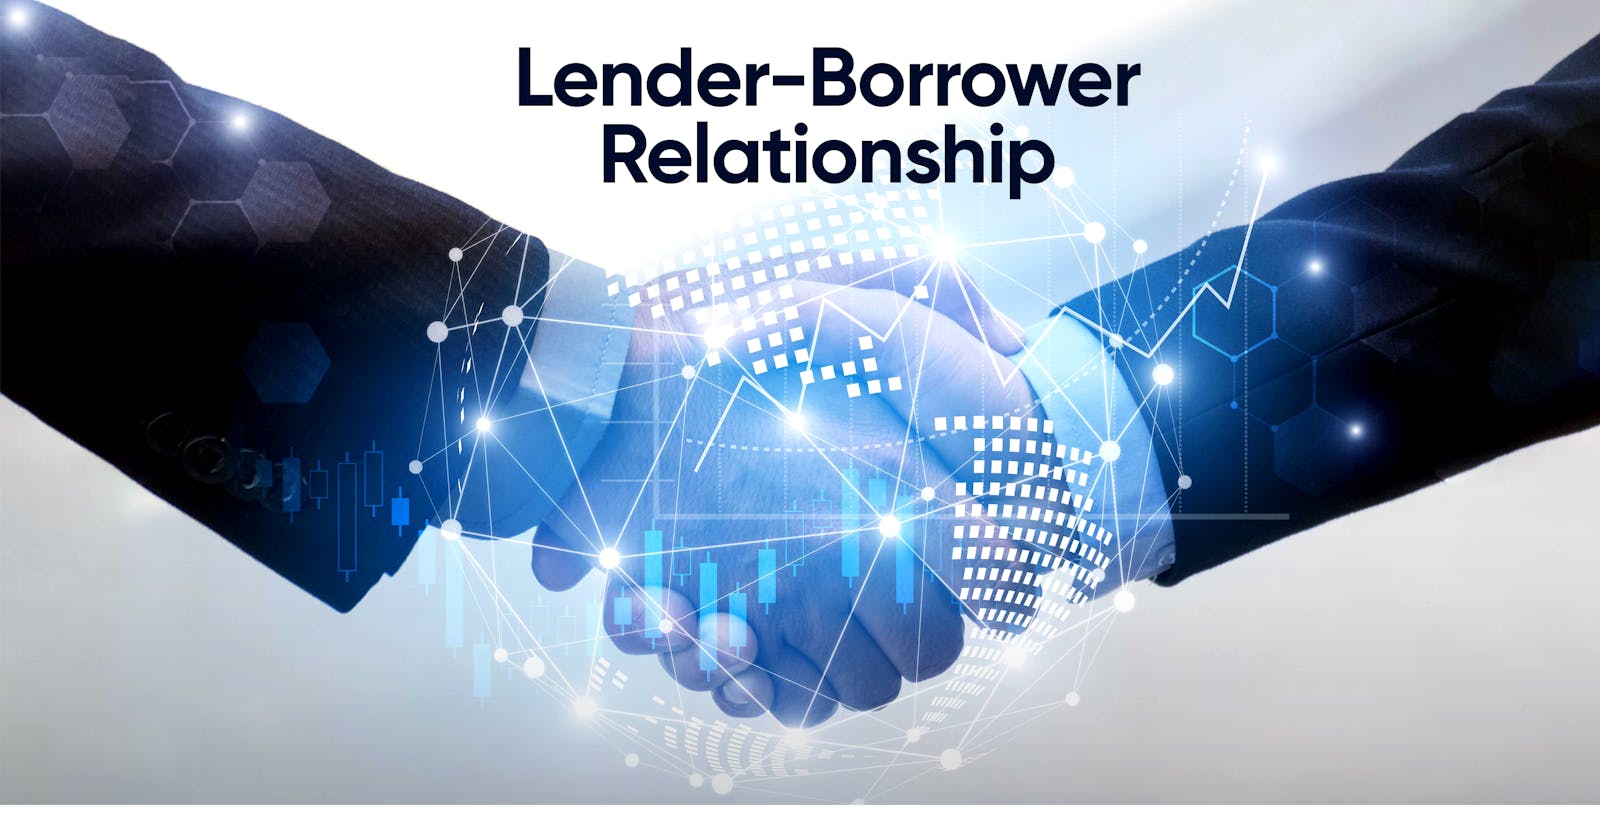 Lender-Borrower Relationship